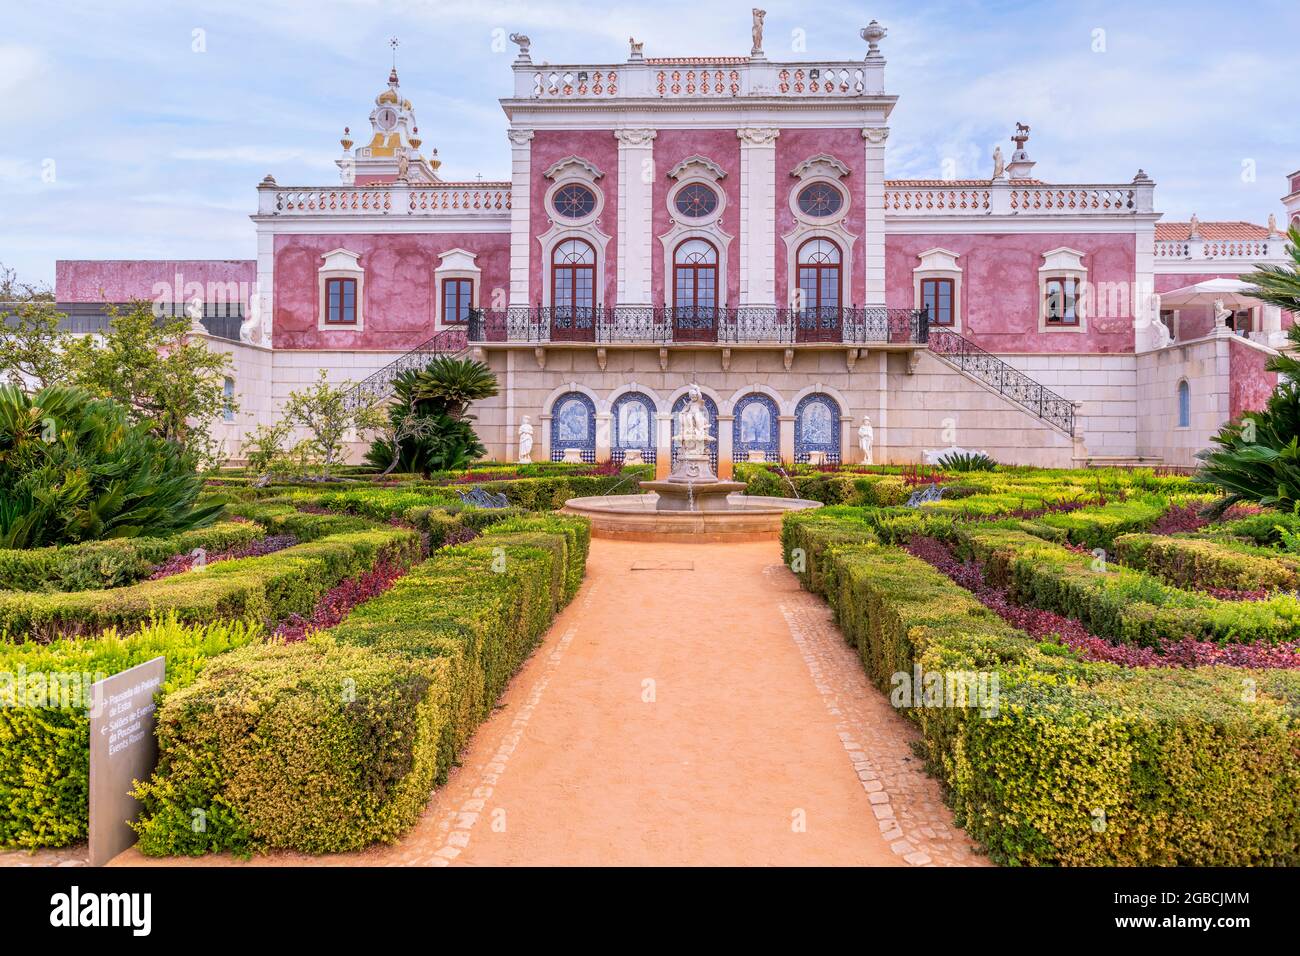 Le palais Estoi rose et une partie des jardins formels, Palacio de Estoi un bel exemple d'architecture rococo fait maintenant partie d'un hôtel. Estoi Algarve Portuga Banque D'Images